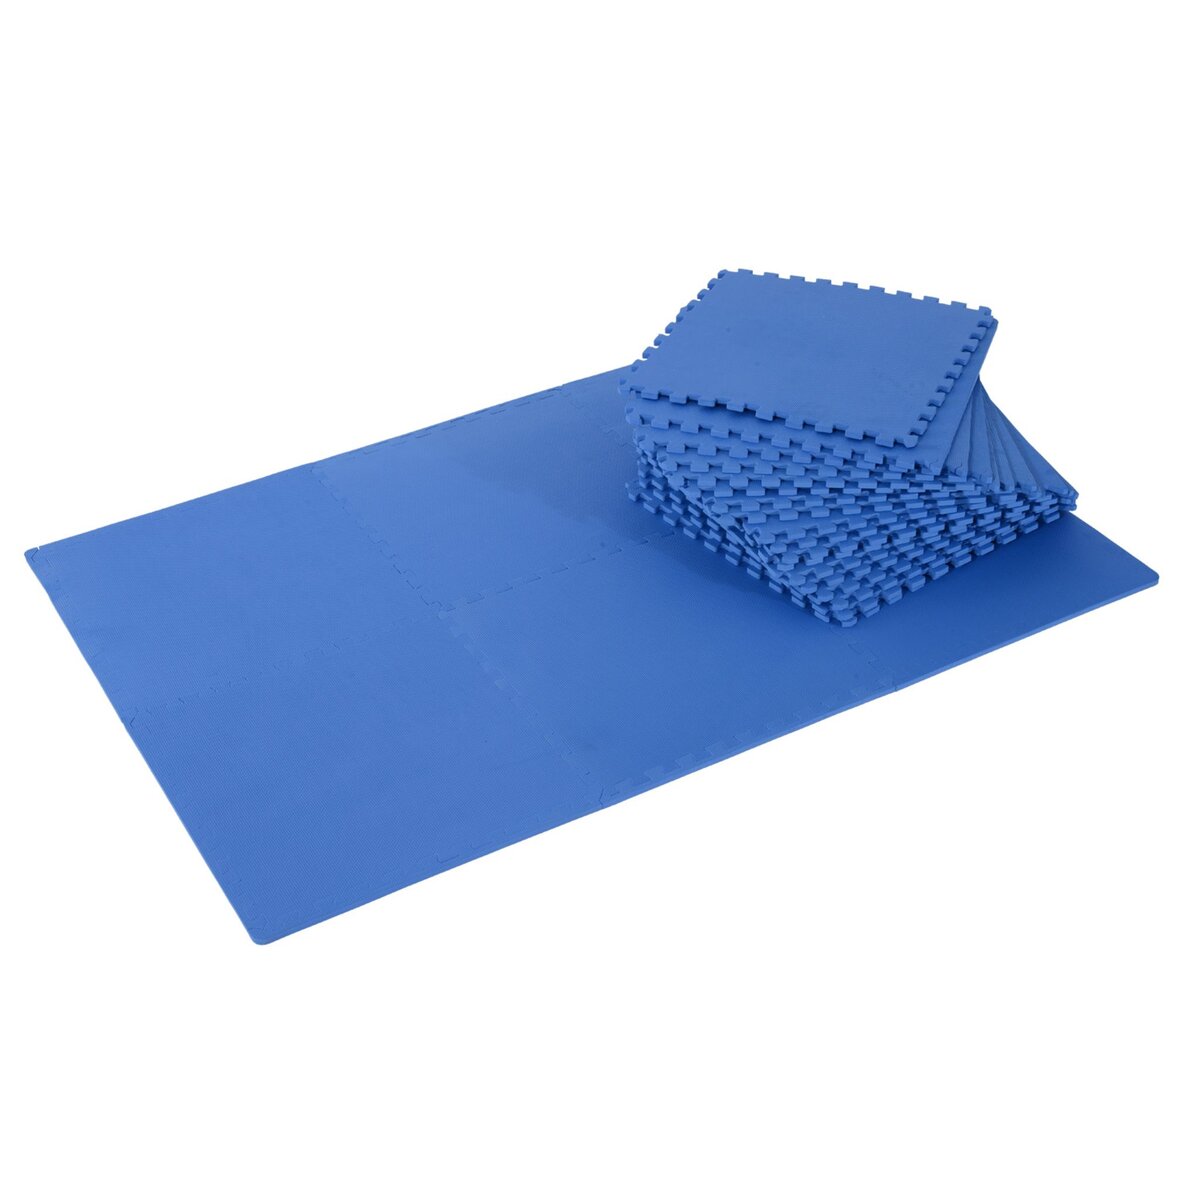 Homcom - Tapis de sol gymnastique Fitness pliable portable rembourrage  mousse 5 cm grand confort revêtement synthétique dim. 2,93L m x 1,15l m  bleu